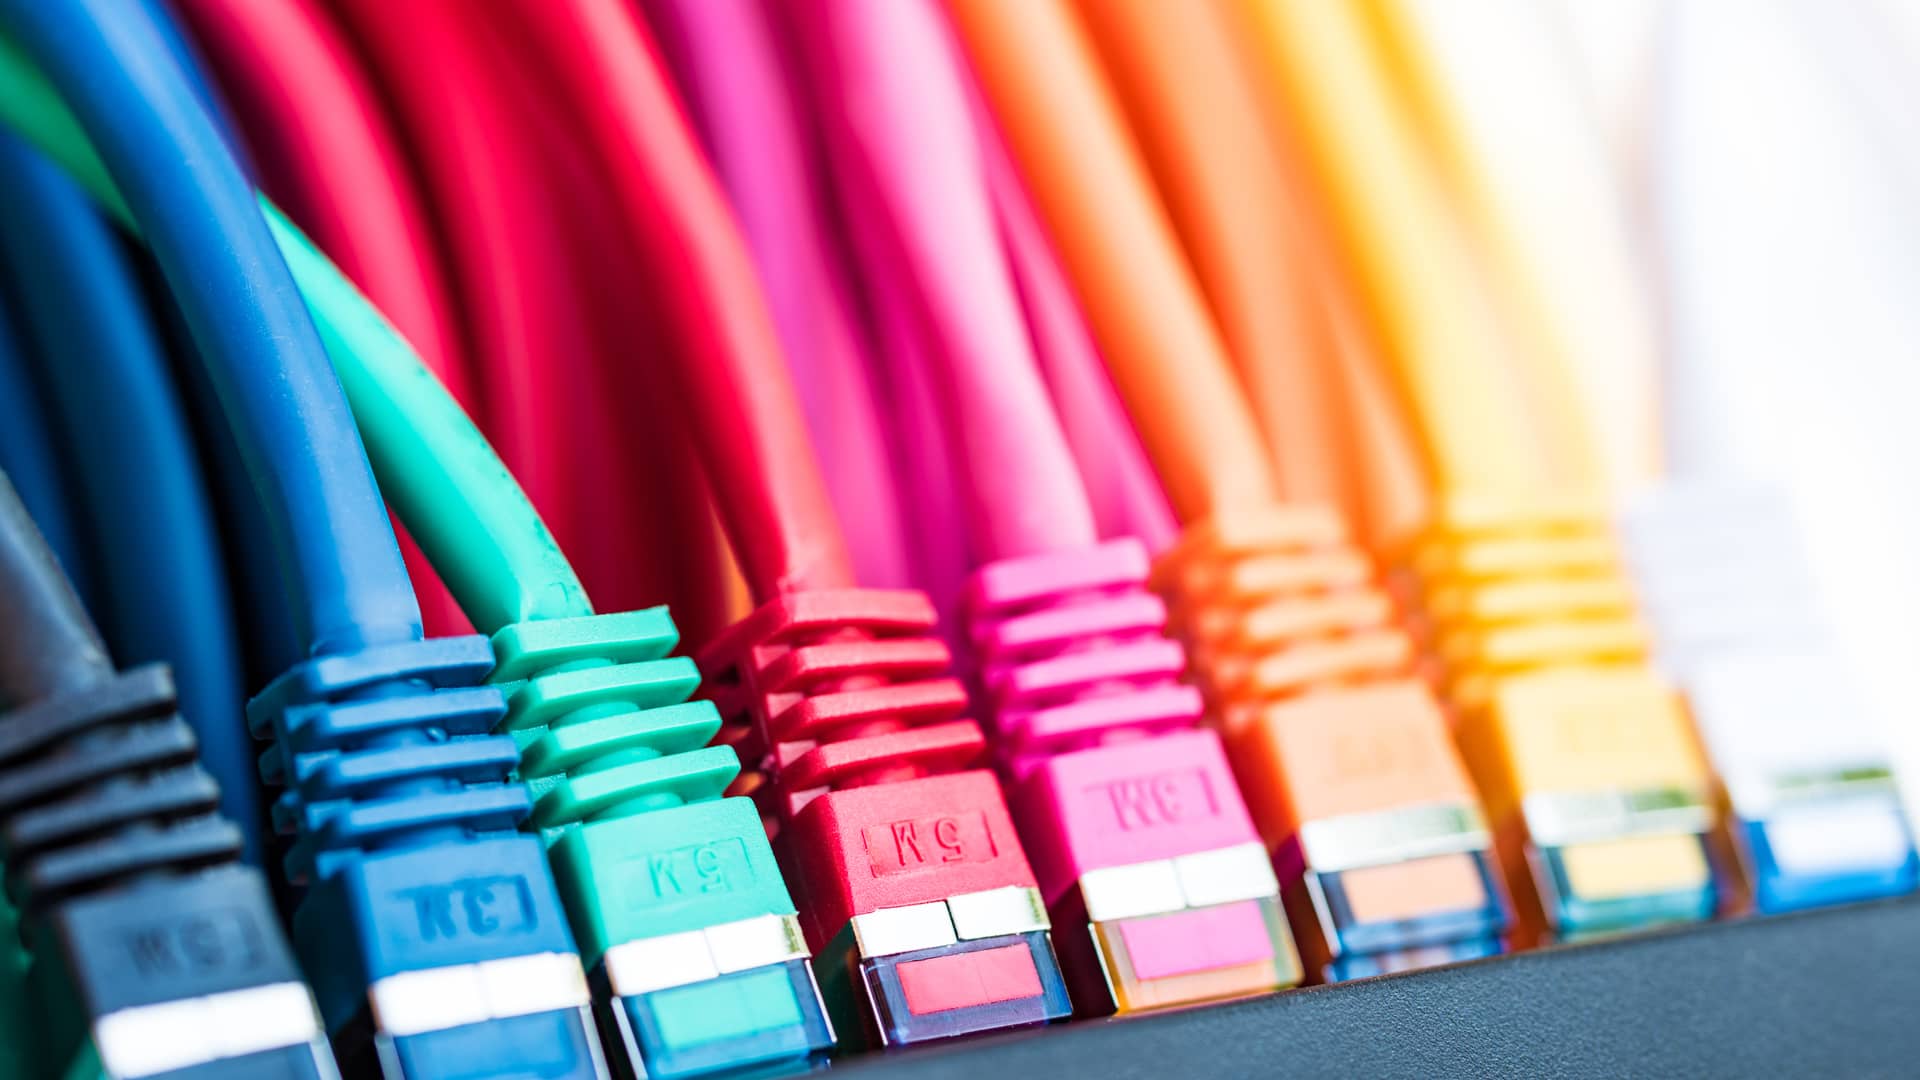 cables coloridos enchufados que representan los test de velocidad de la empresa telnor